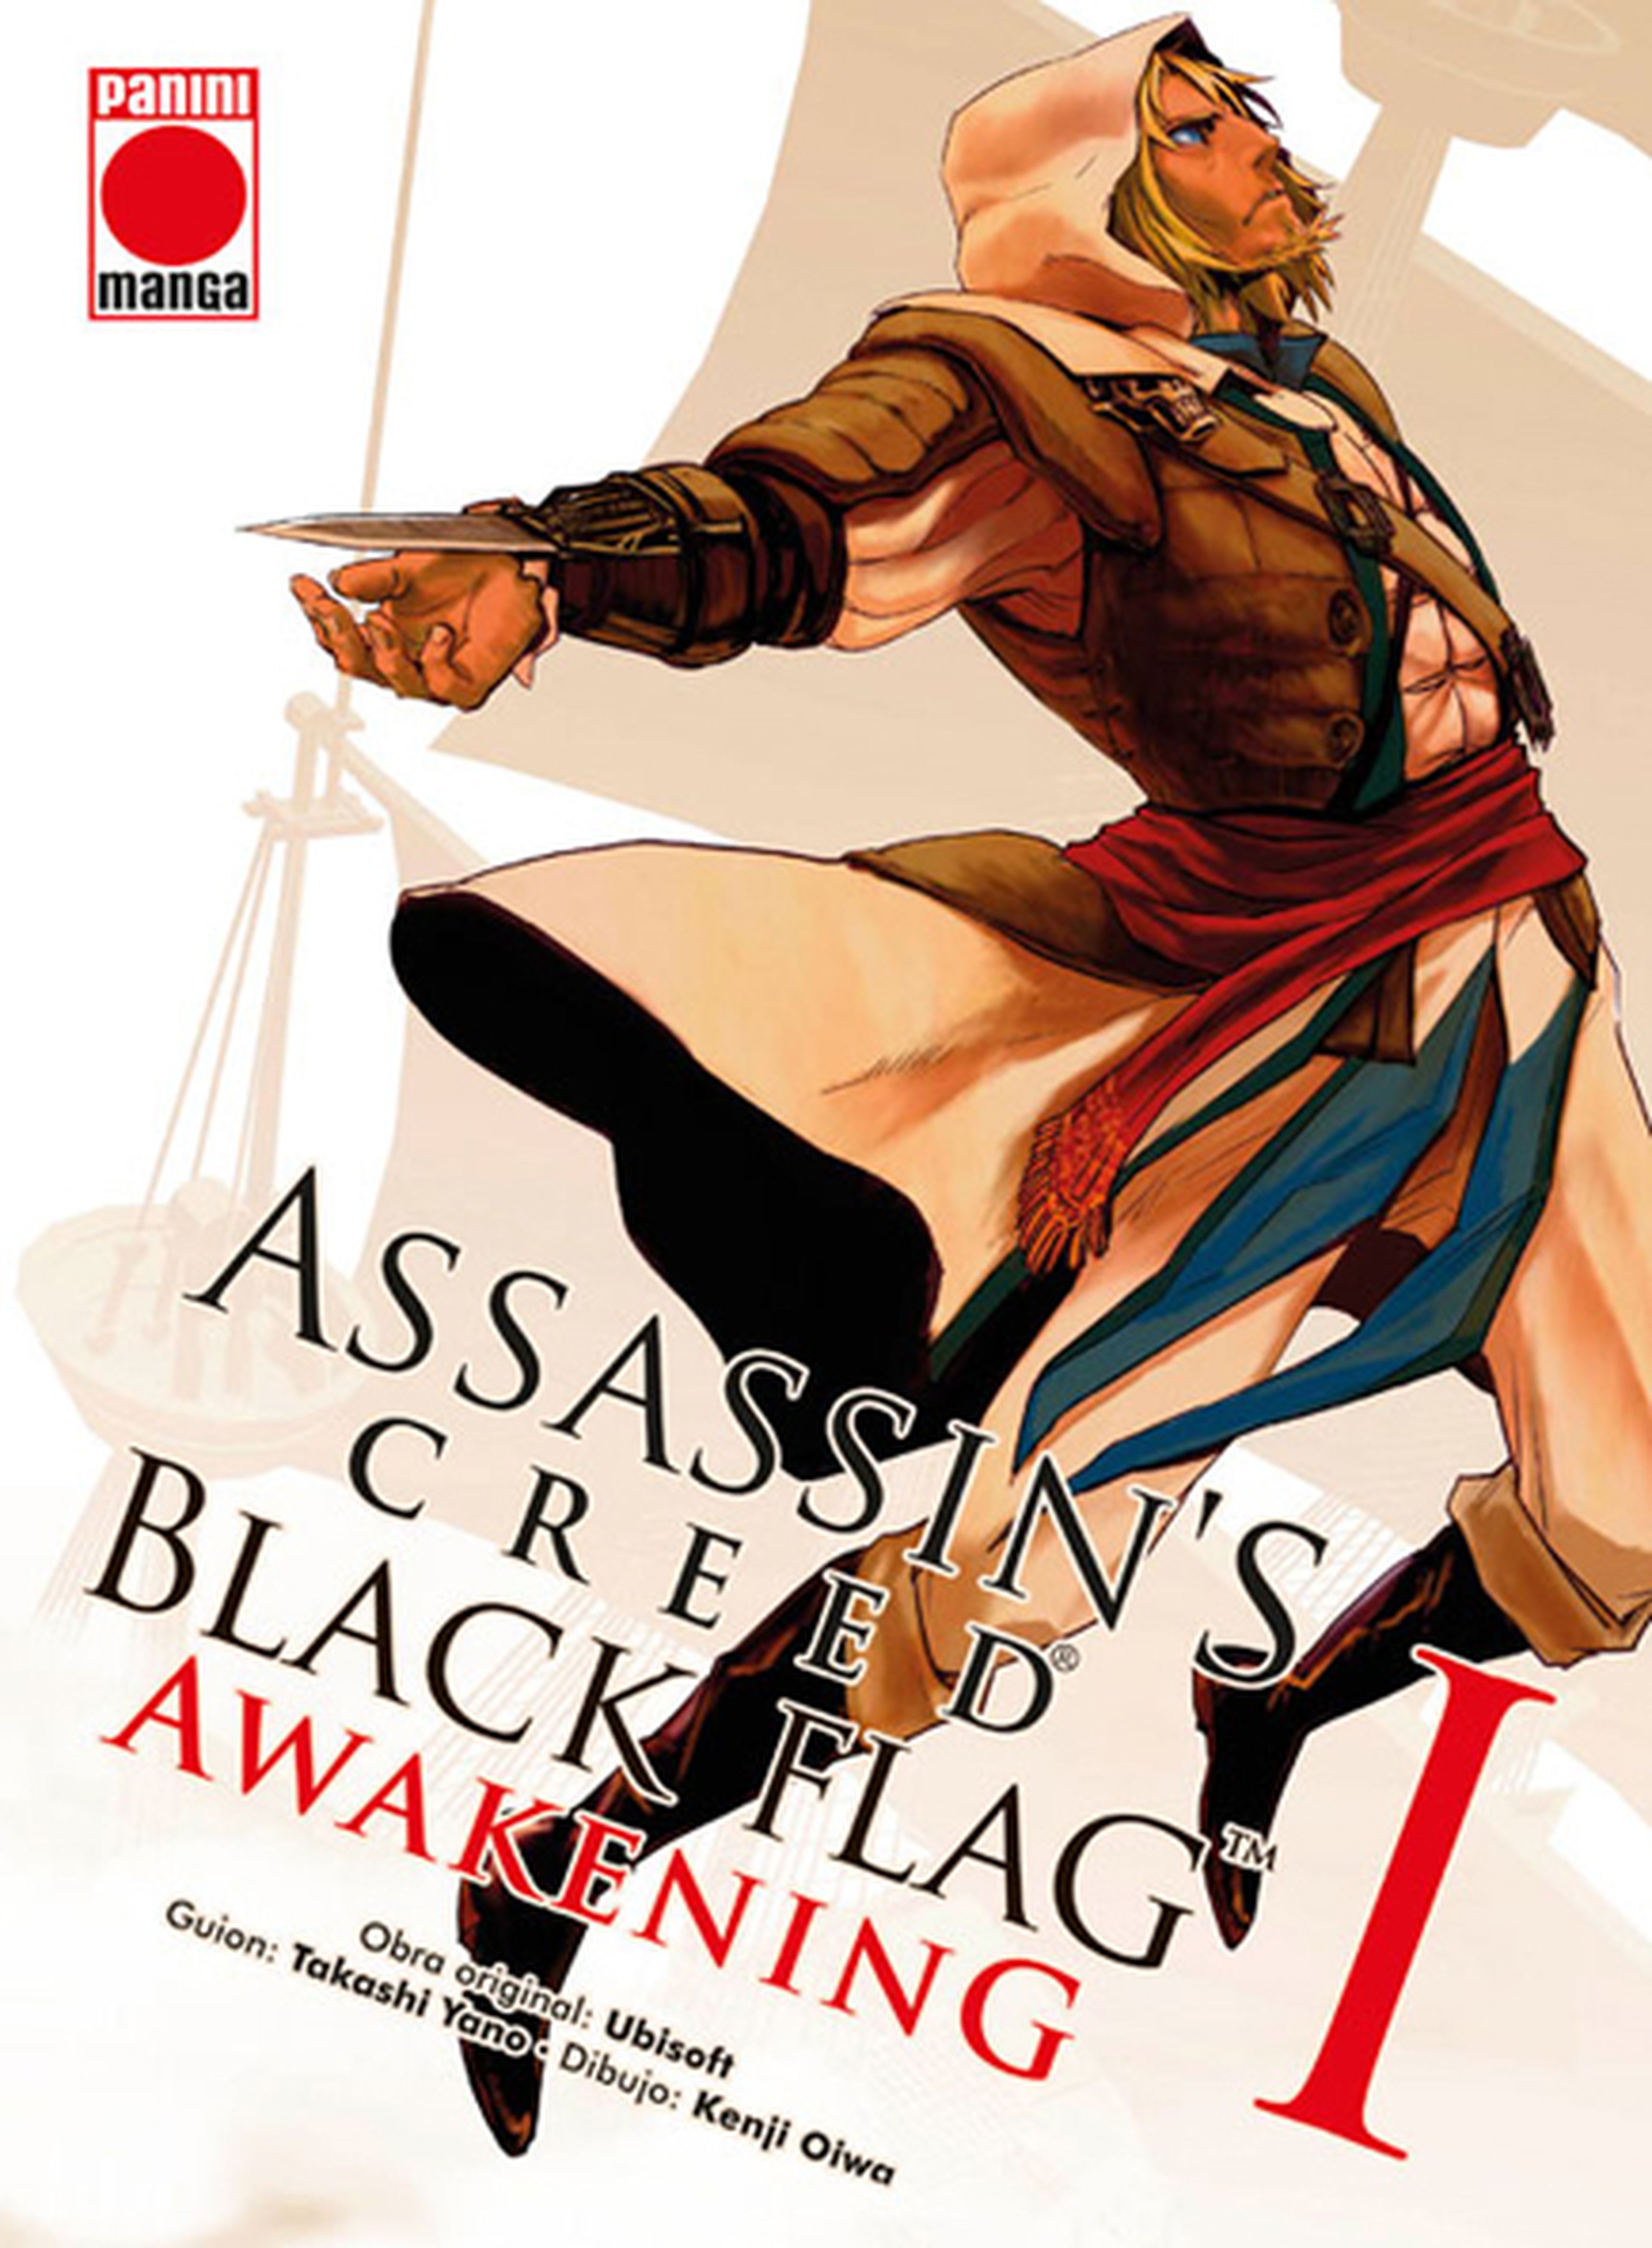 El manga de Assassin’s Creed IV: Black Flag atraca en España